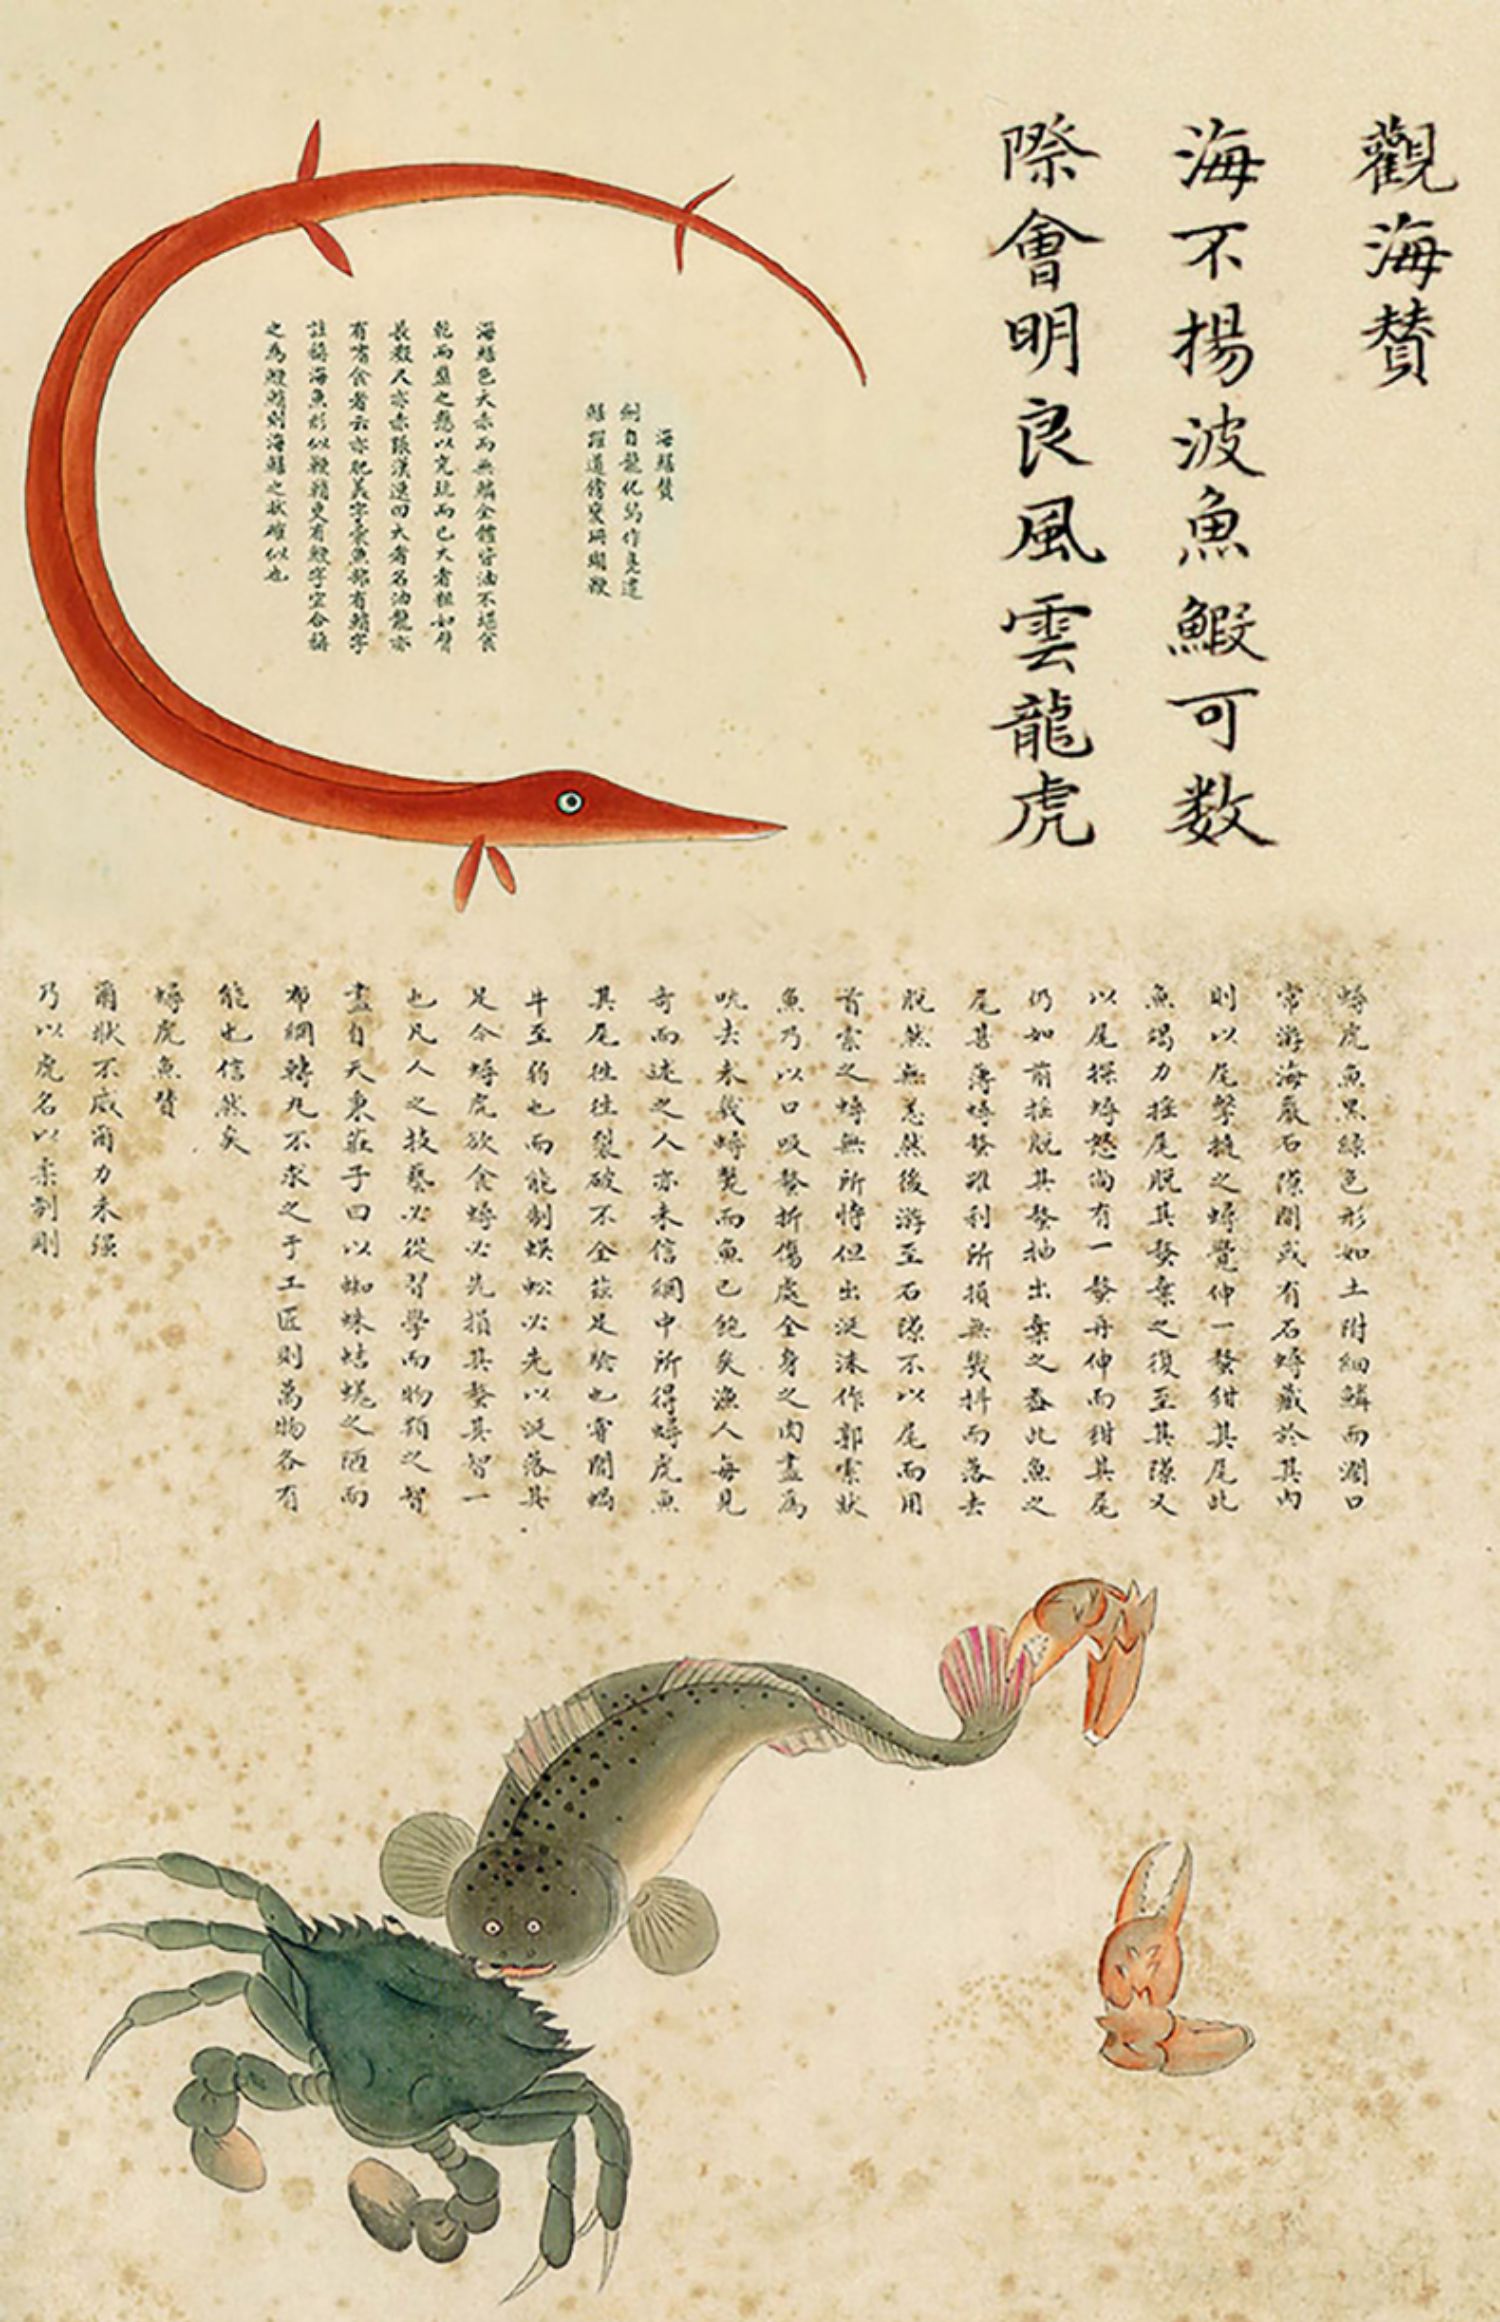 张辰亮 解读故宫藏品《海错图》中的生物密码 博物君 出版社图书 正版